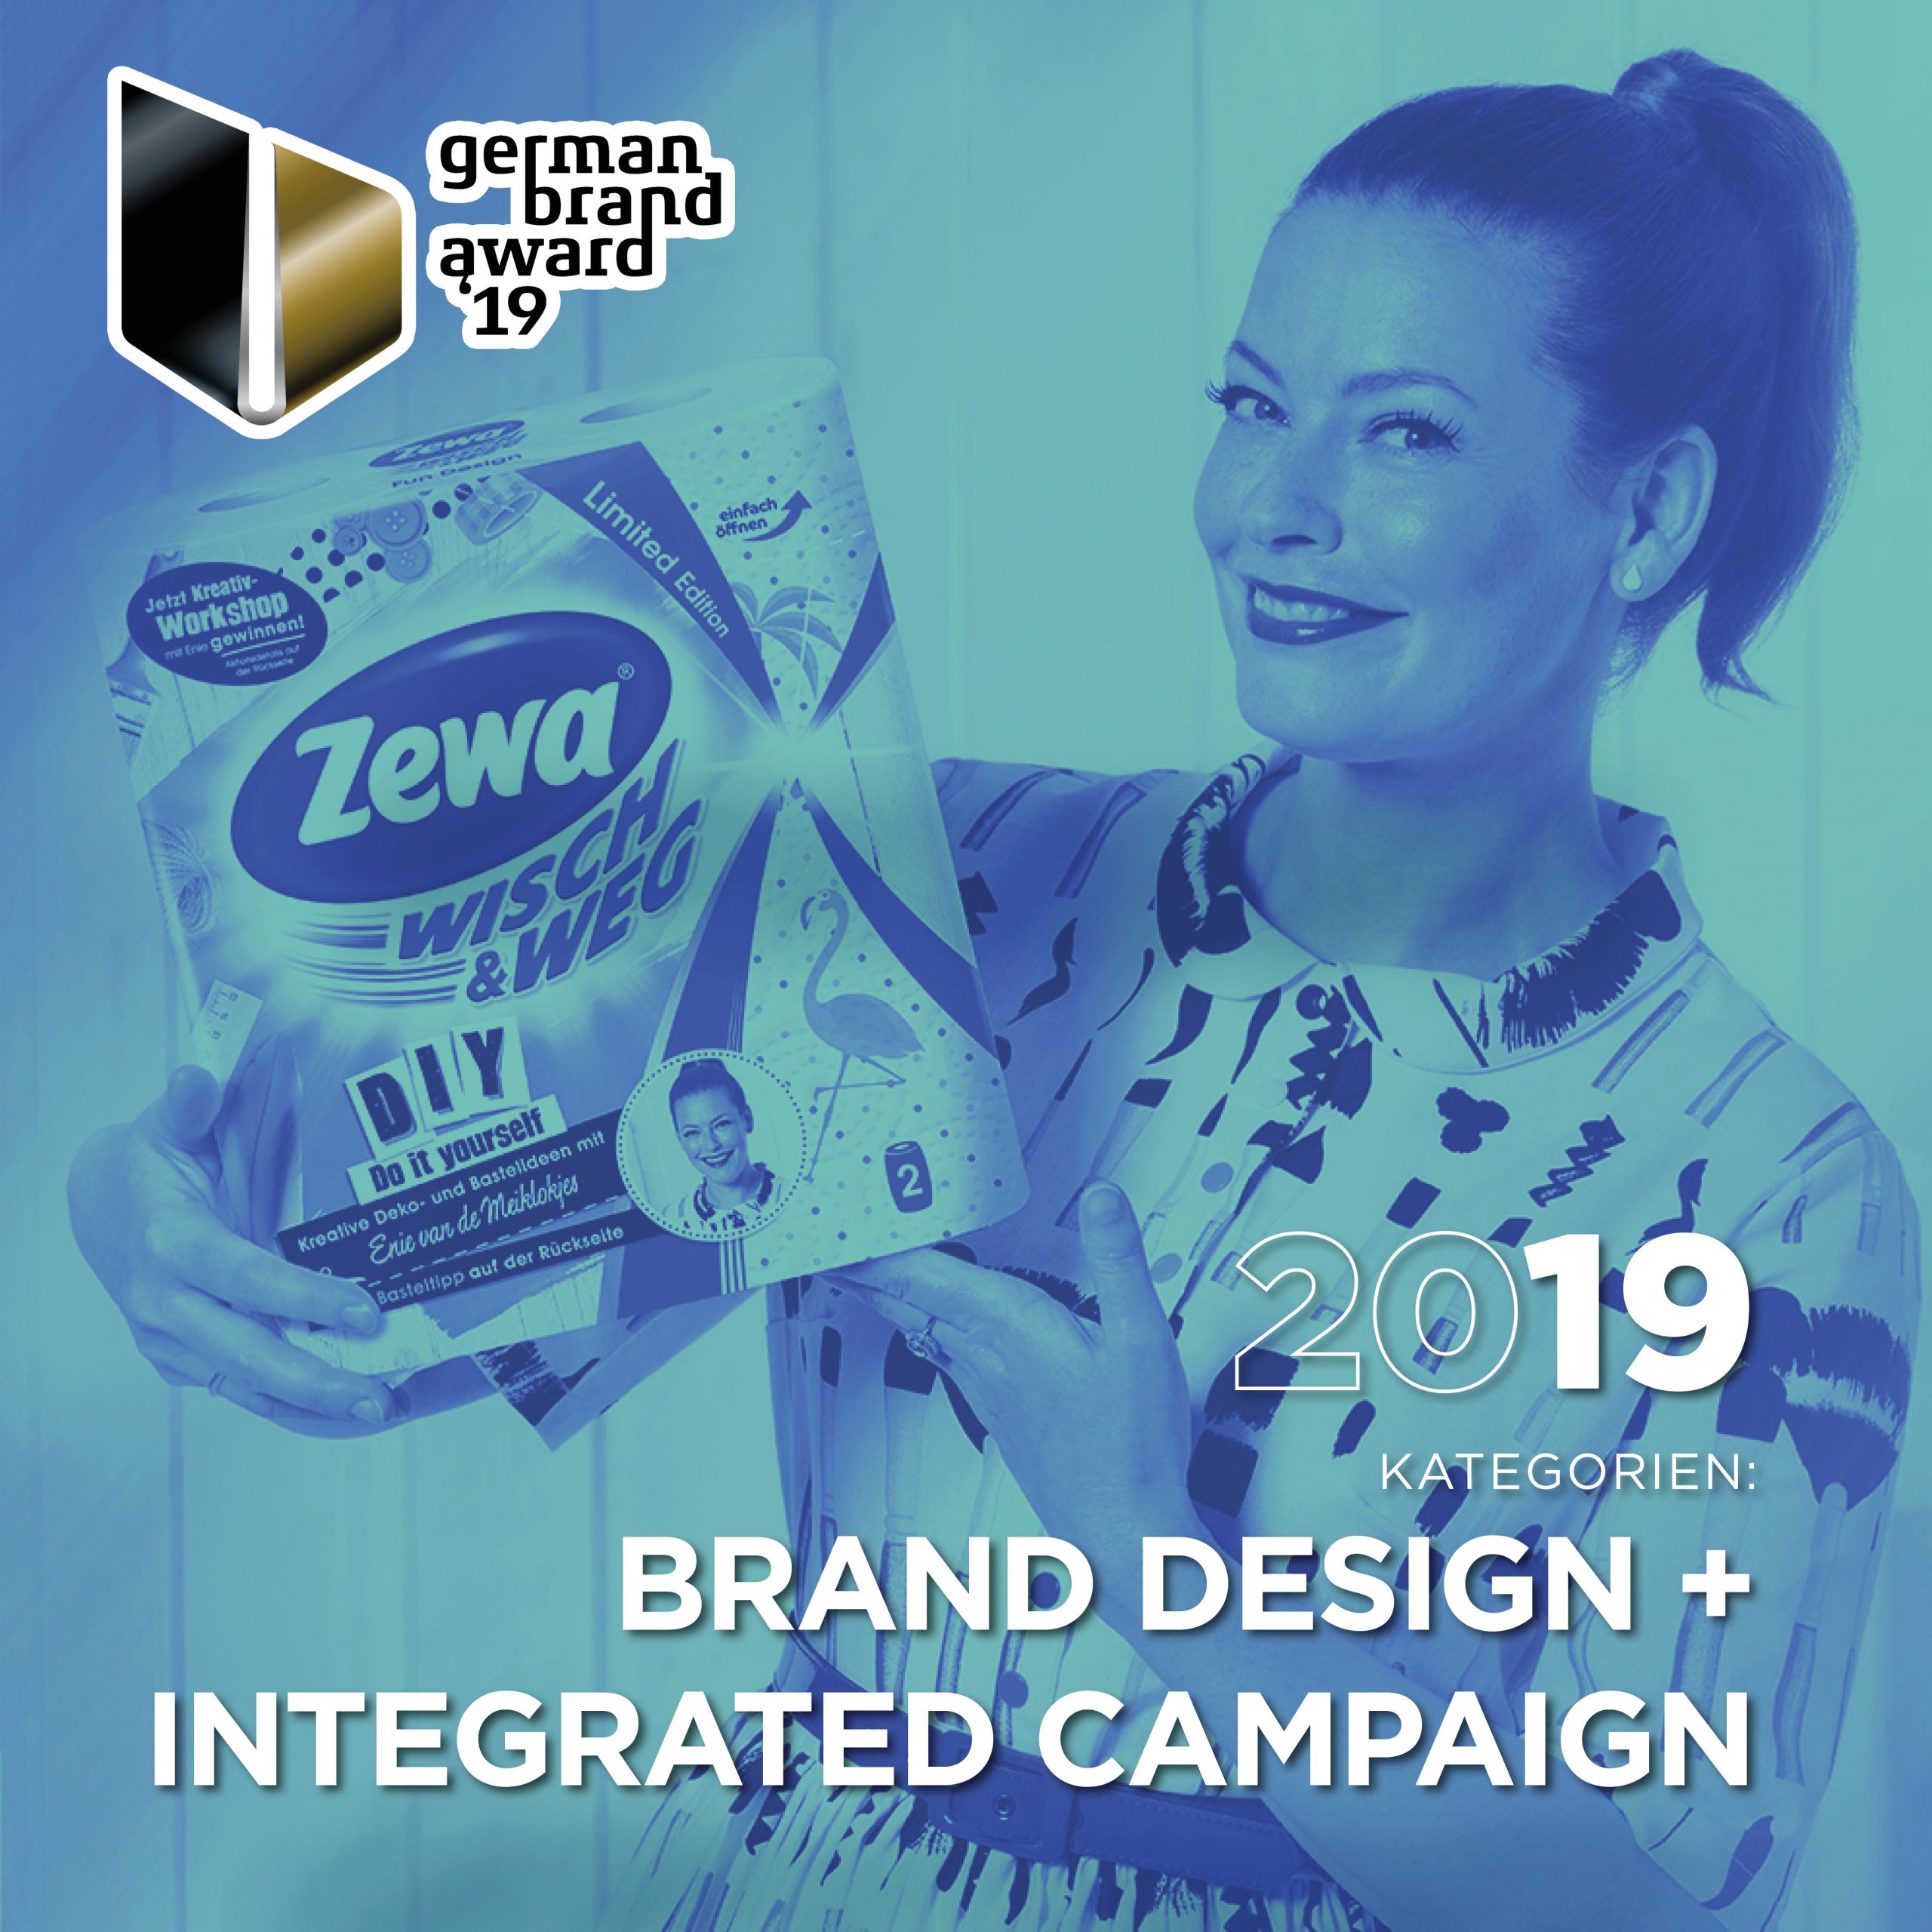 Gewinner German Brand Award 2019 für Brand Design + intergrated Campaign mit Enie van de Meiklokjes